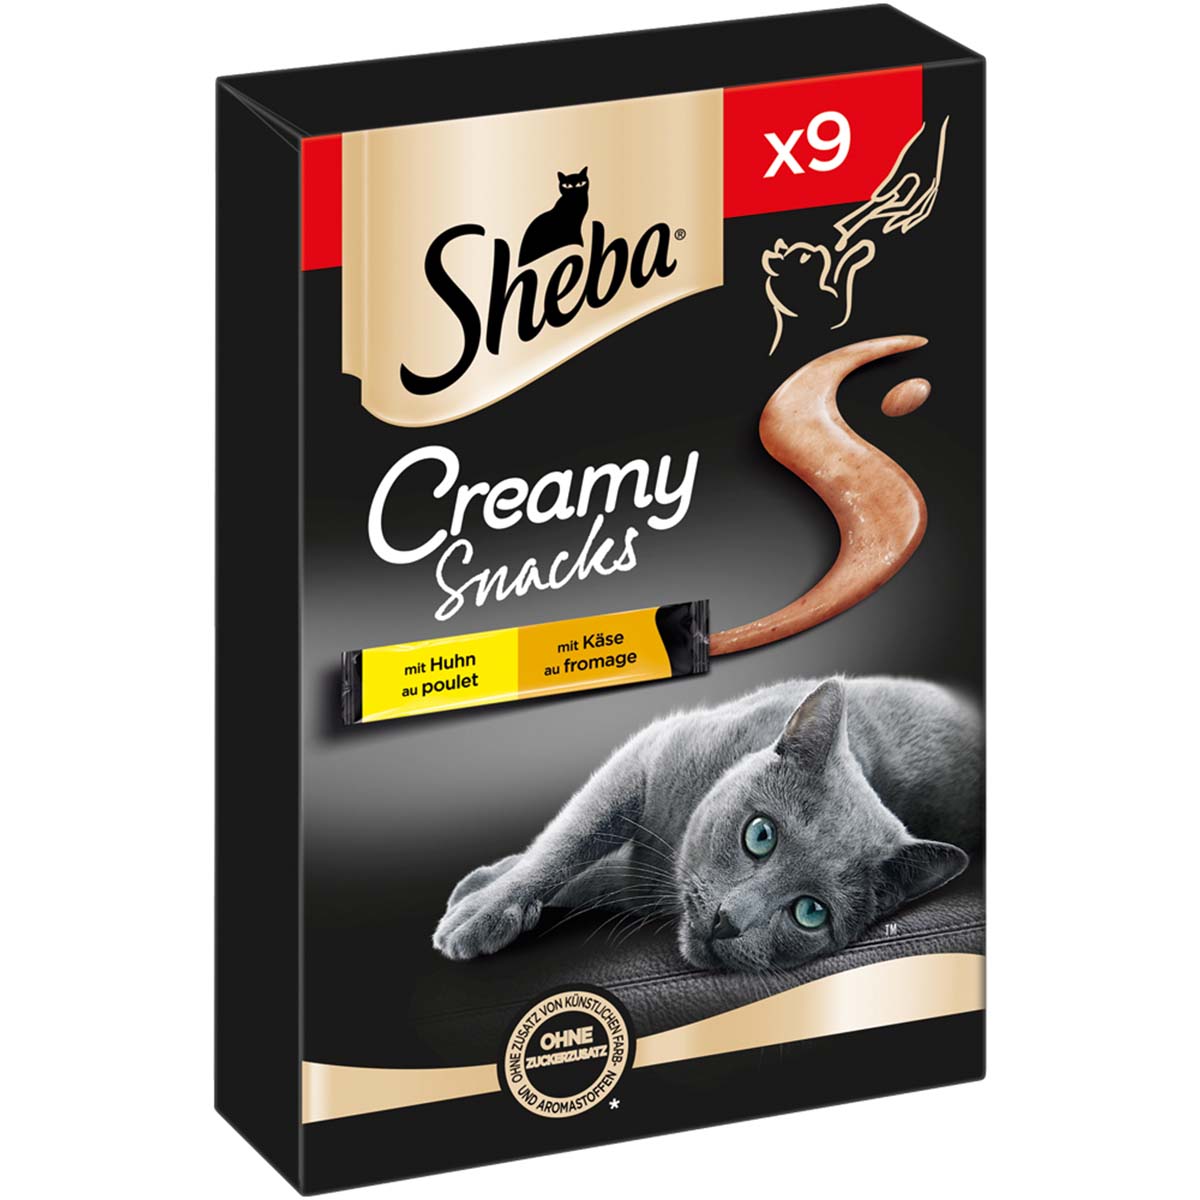 SHEBA® Creamy Snacks mit Huhn und Käse 9x12g von Sheba